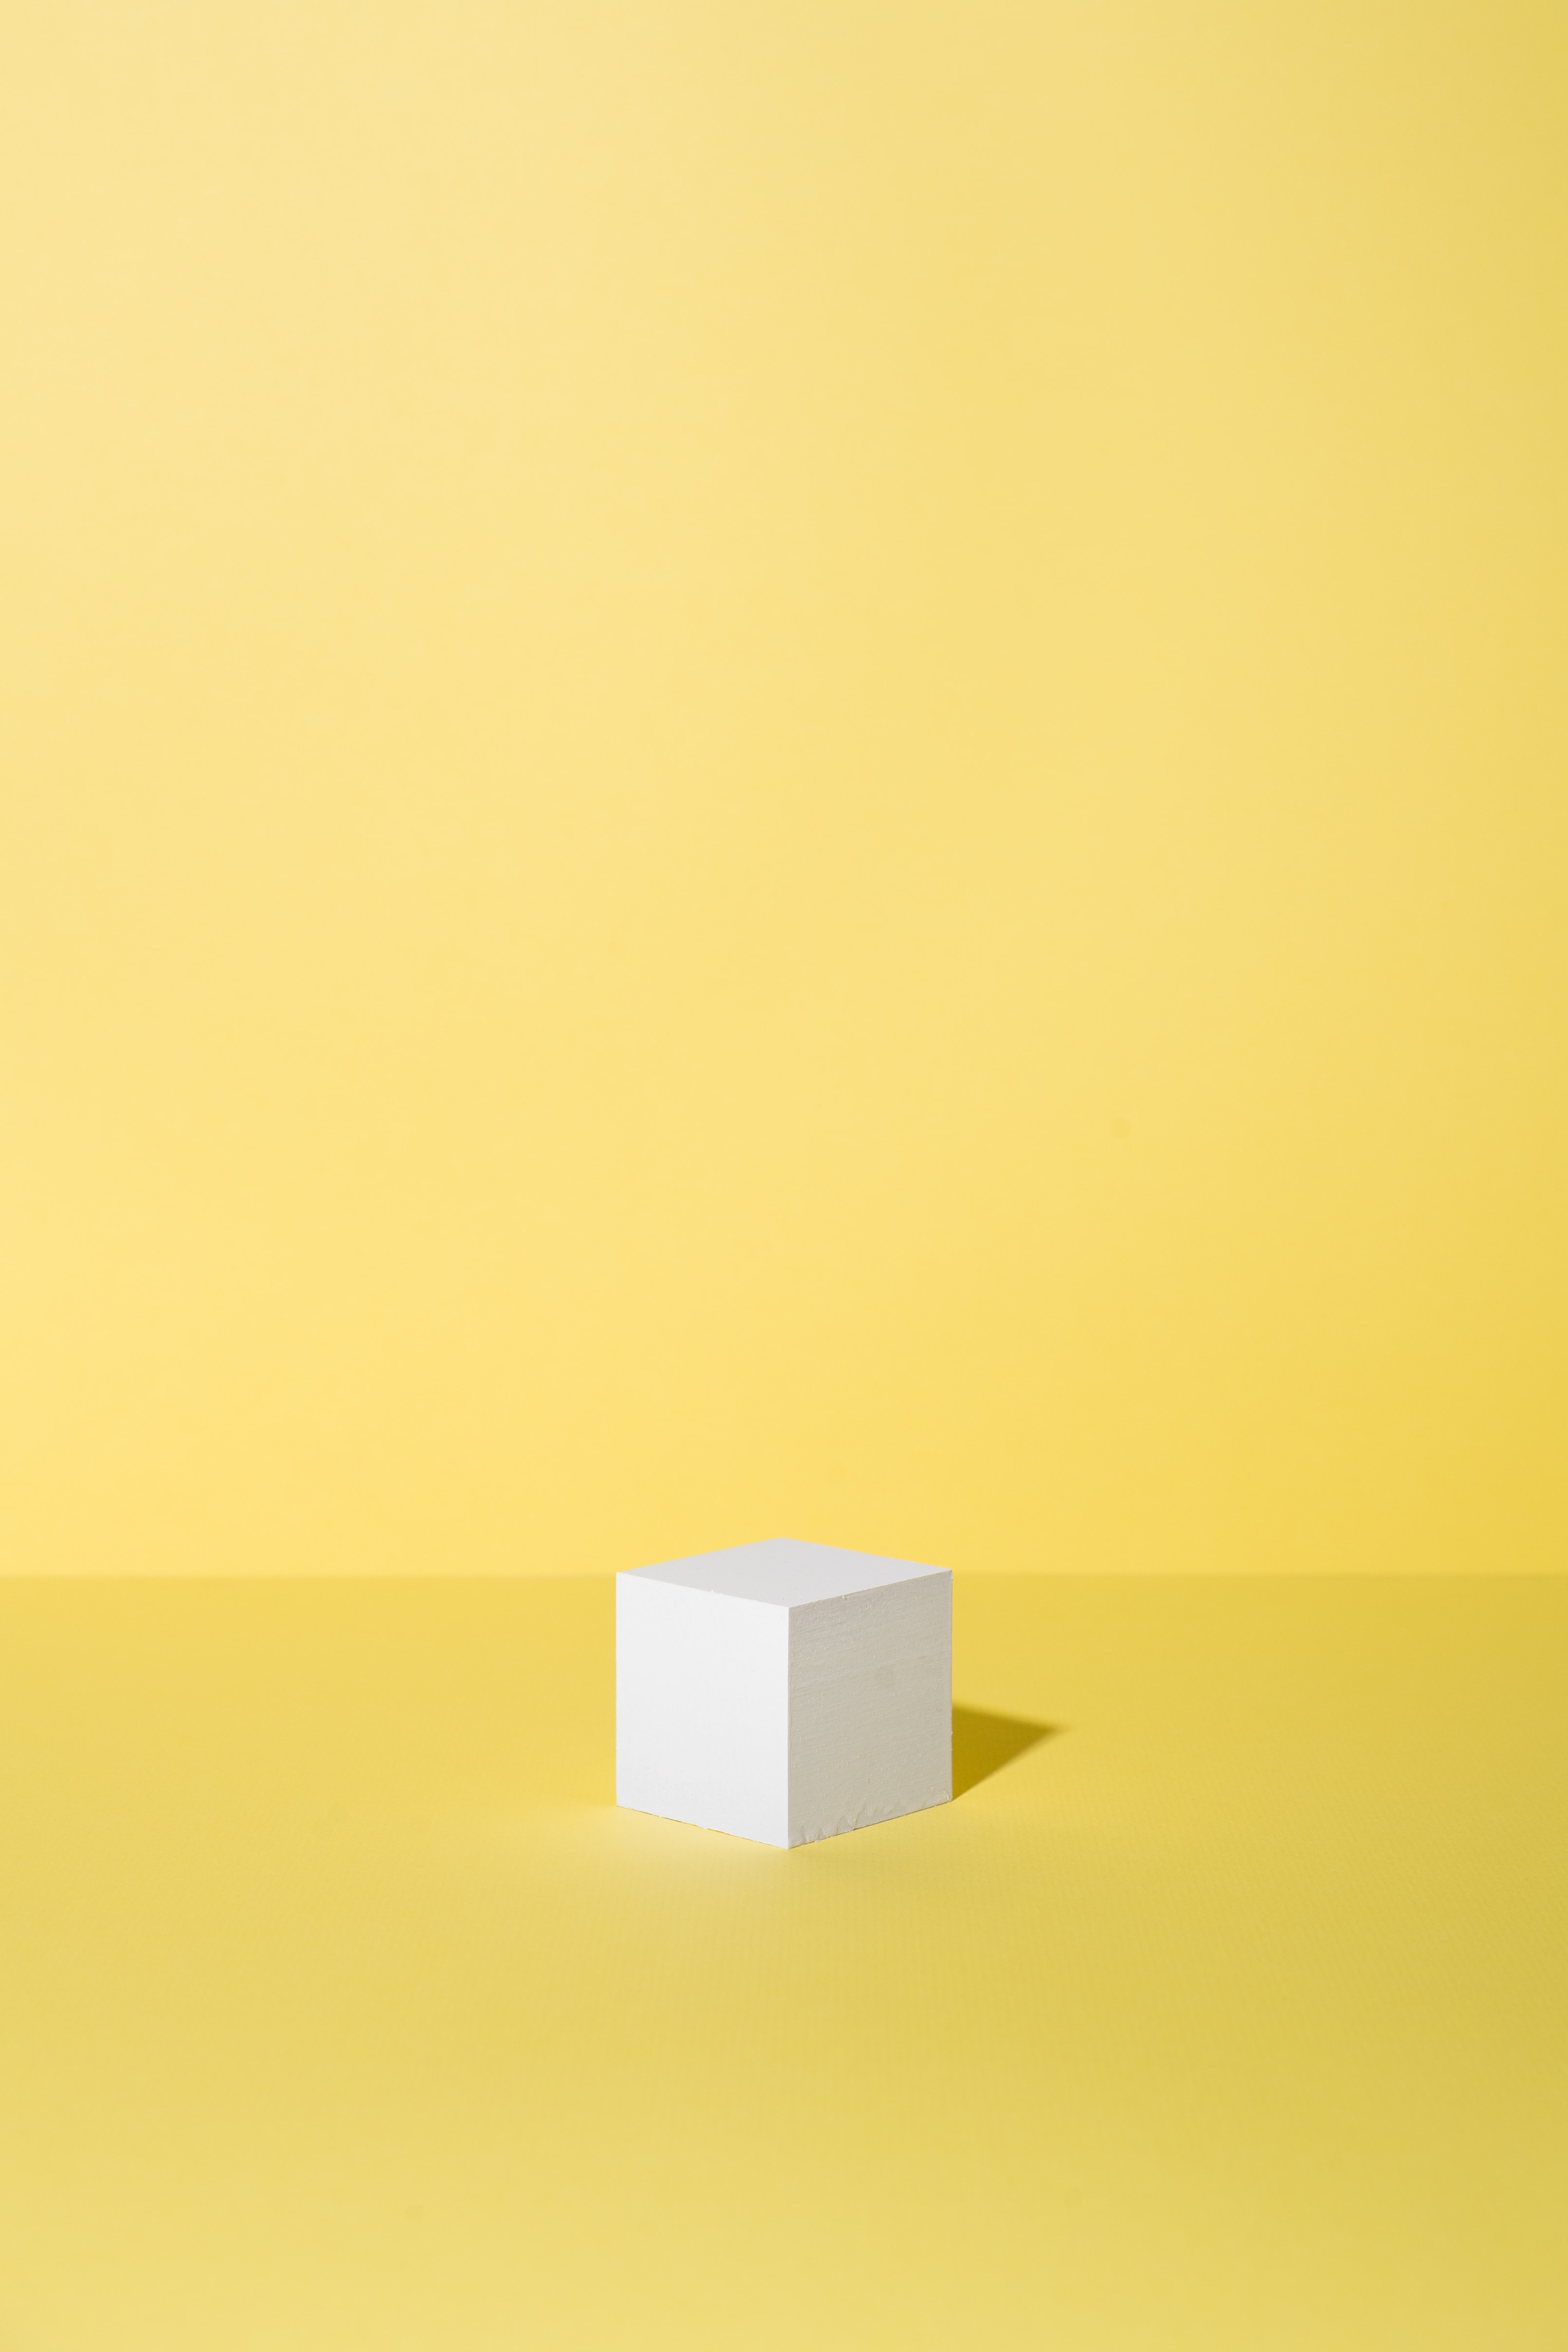 cube, minimalism, yellow, figure